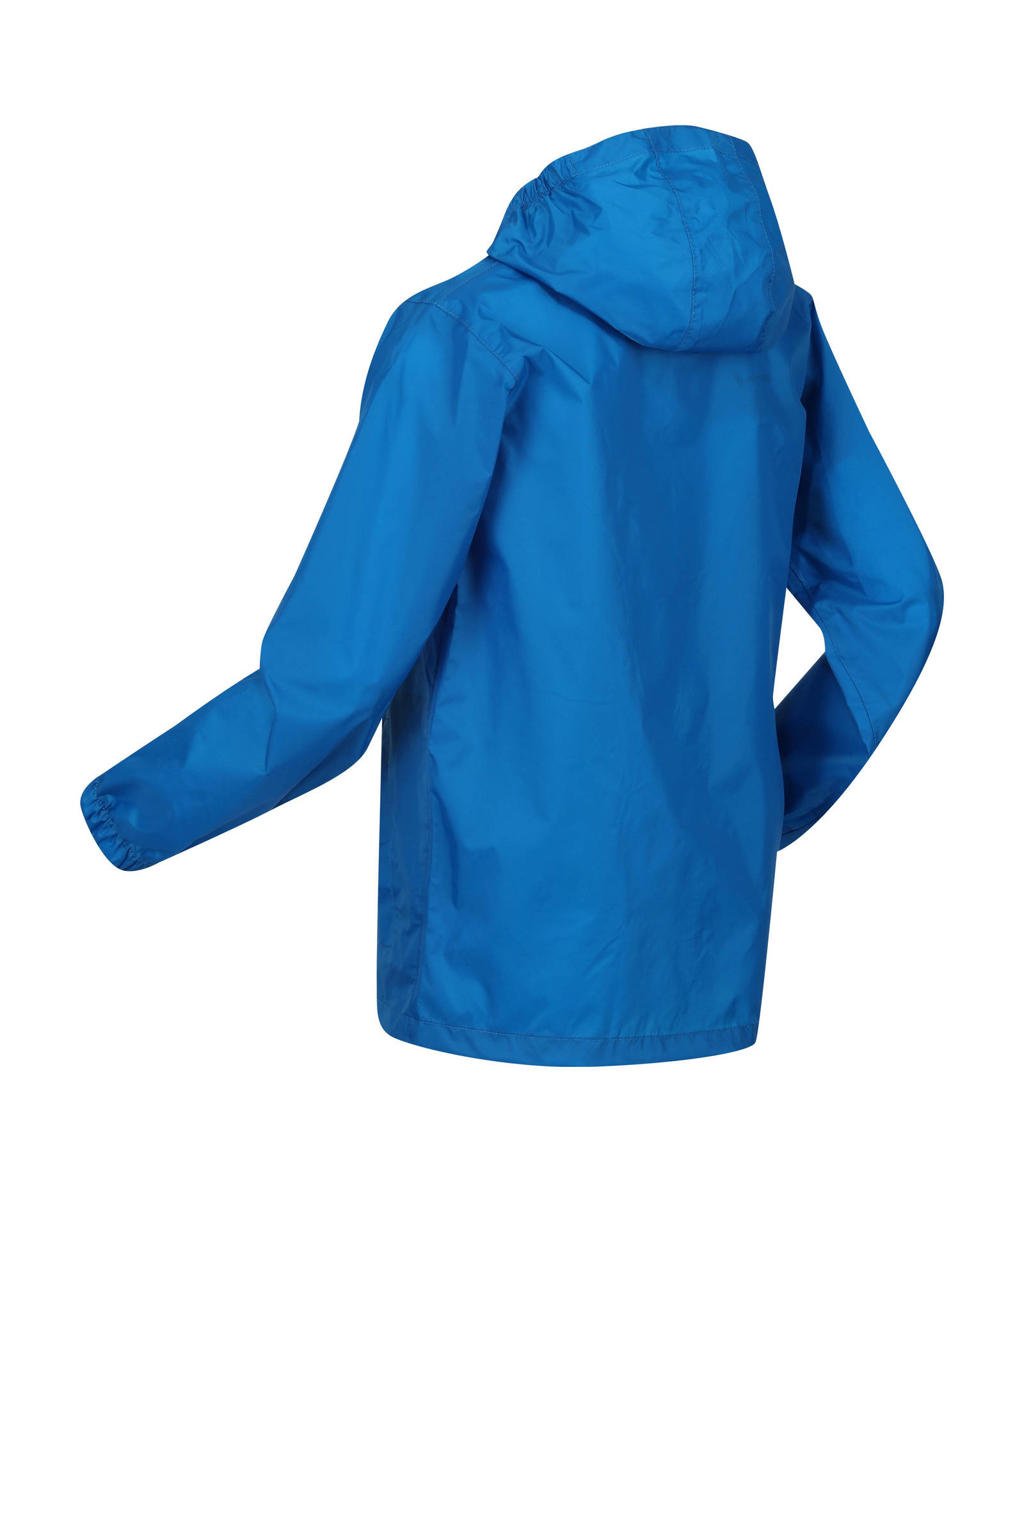 Blauwe jongens en meisjes Regatta kids regenjas van polyamide met lange mouwen, capuchon en ritssluiting